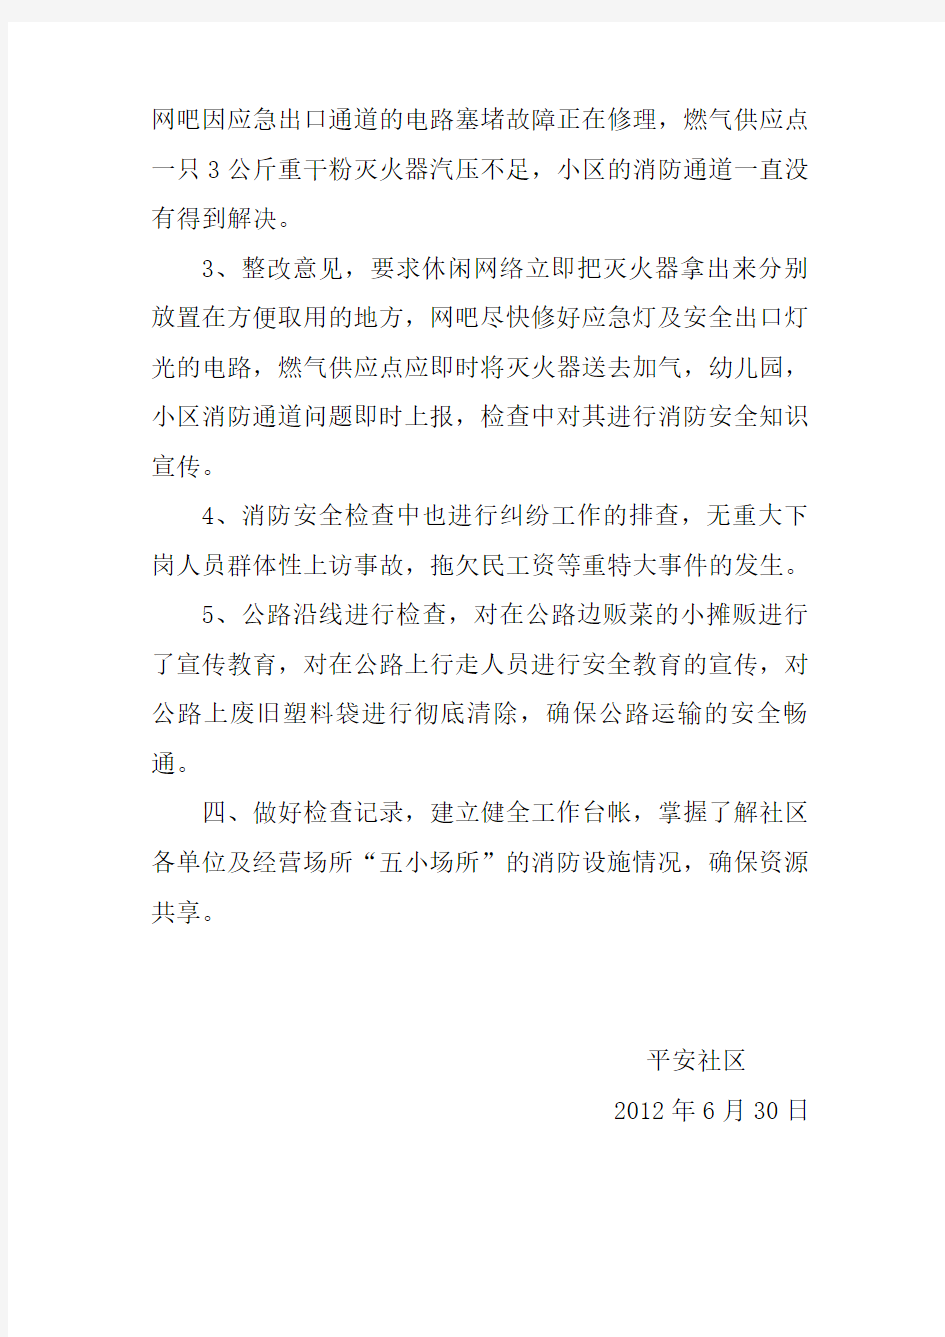 苏家塘社区居委会根据莲华办事处对消防工作的部署